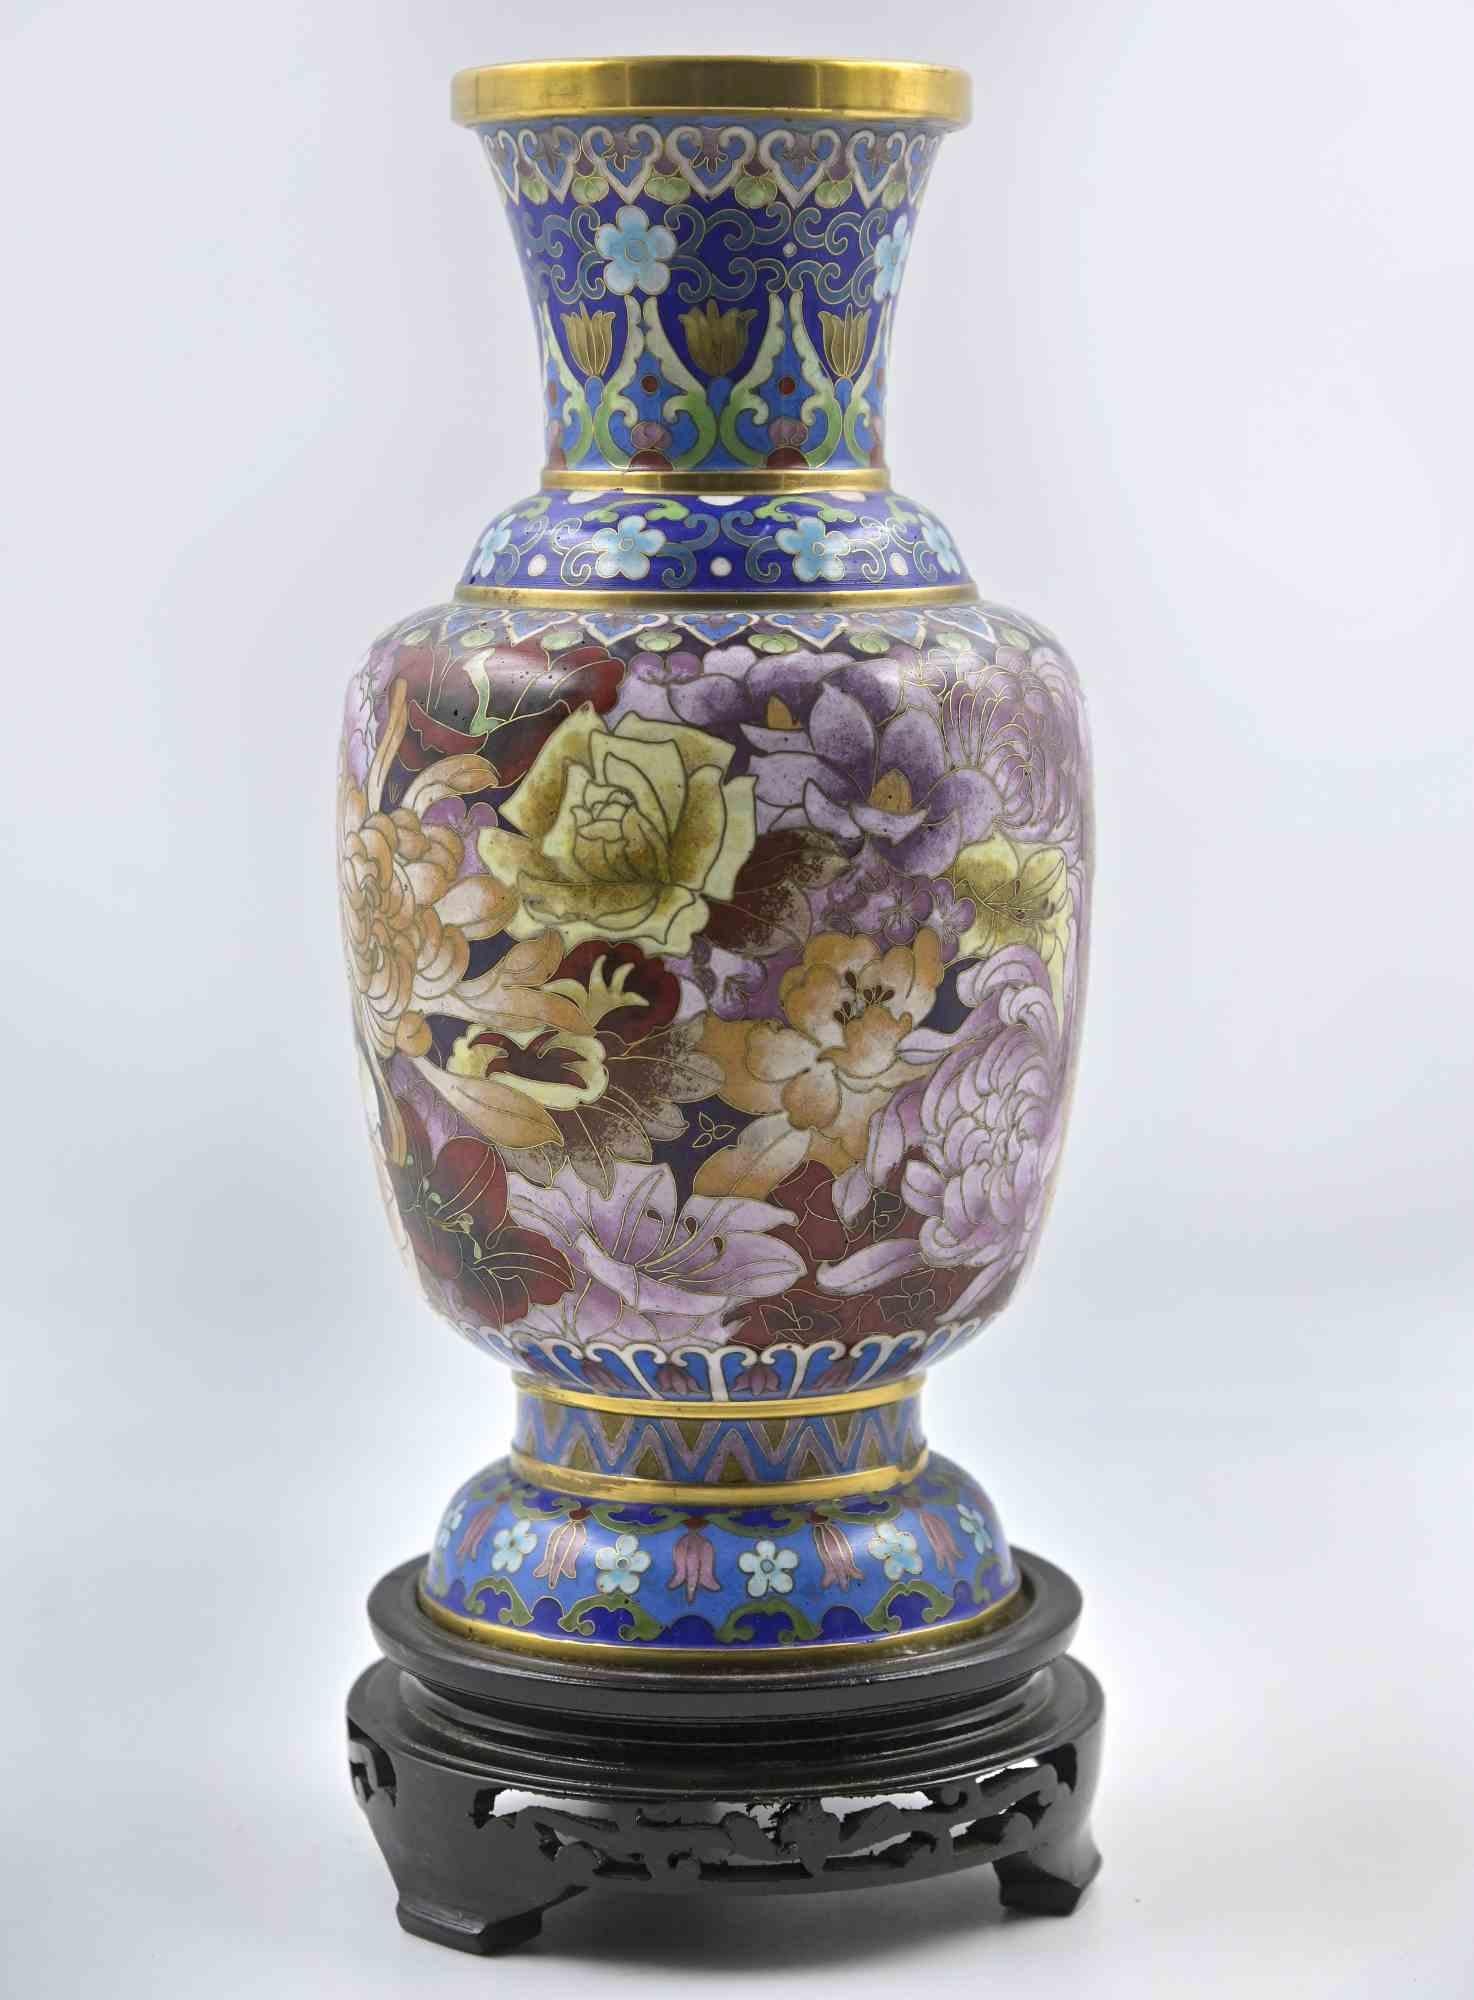 Vintage Chinese Vase Anfang 20. Jahrhundert

Keramik und Metall auf einem Holzsockel.

31x13 cm.